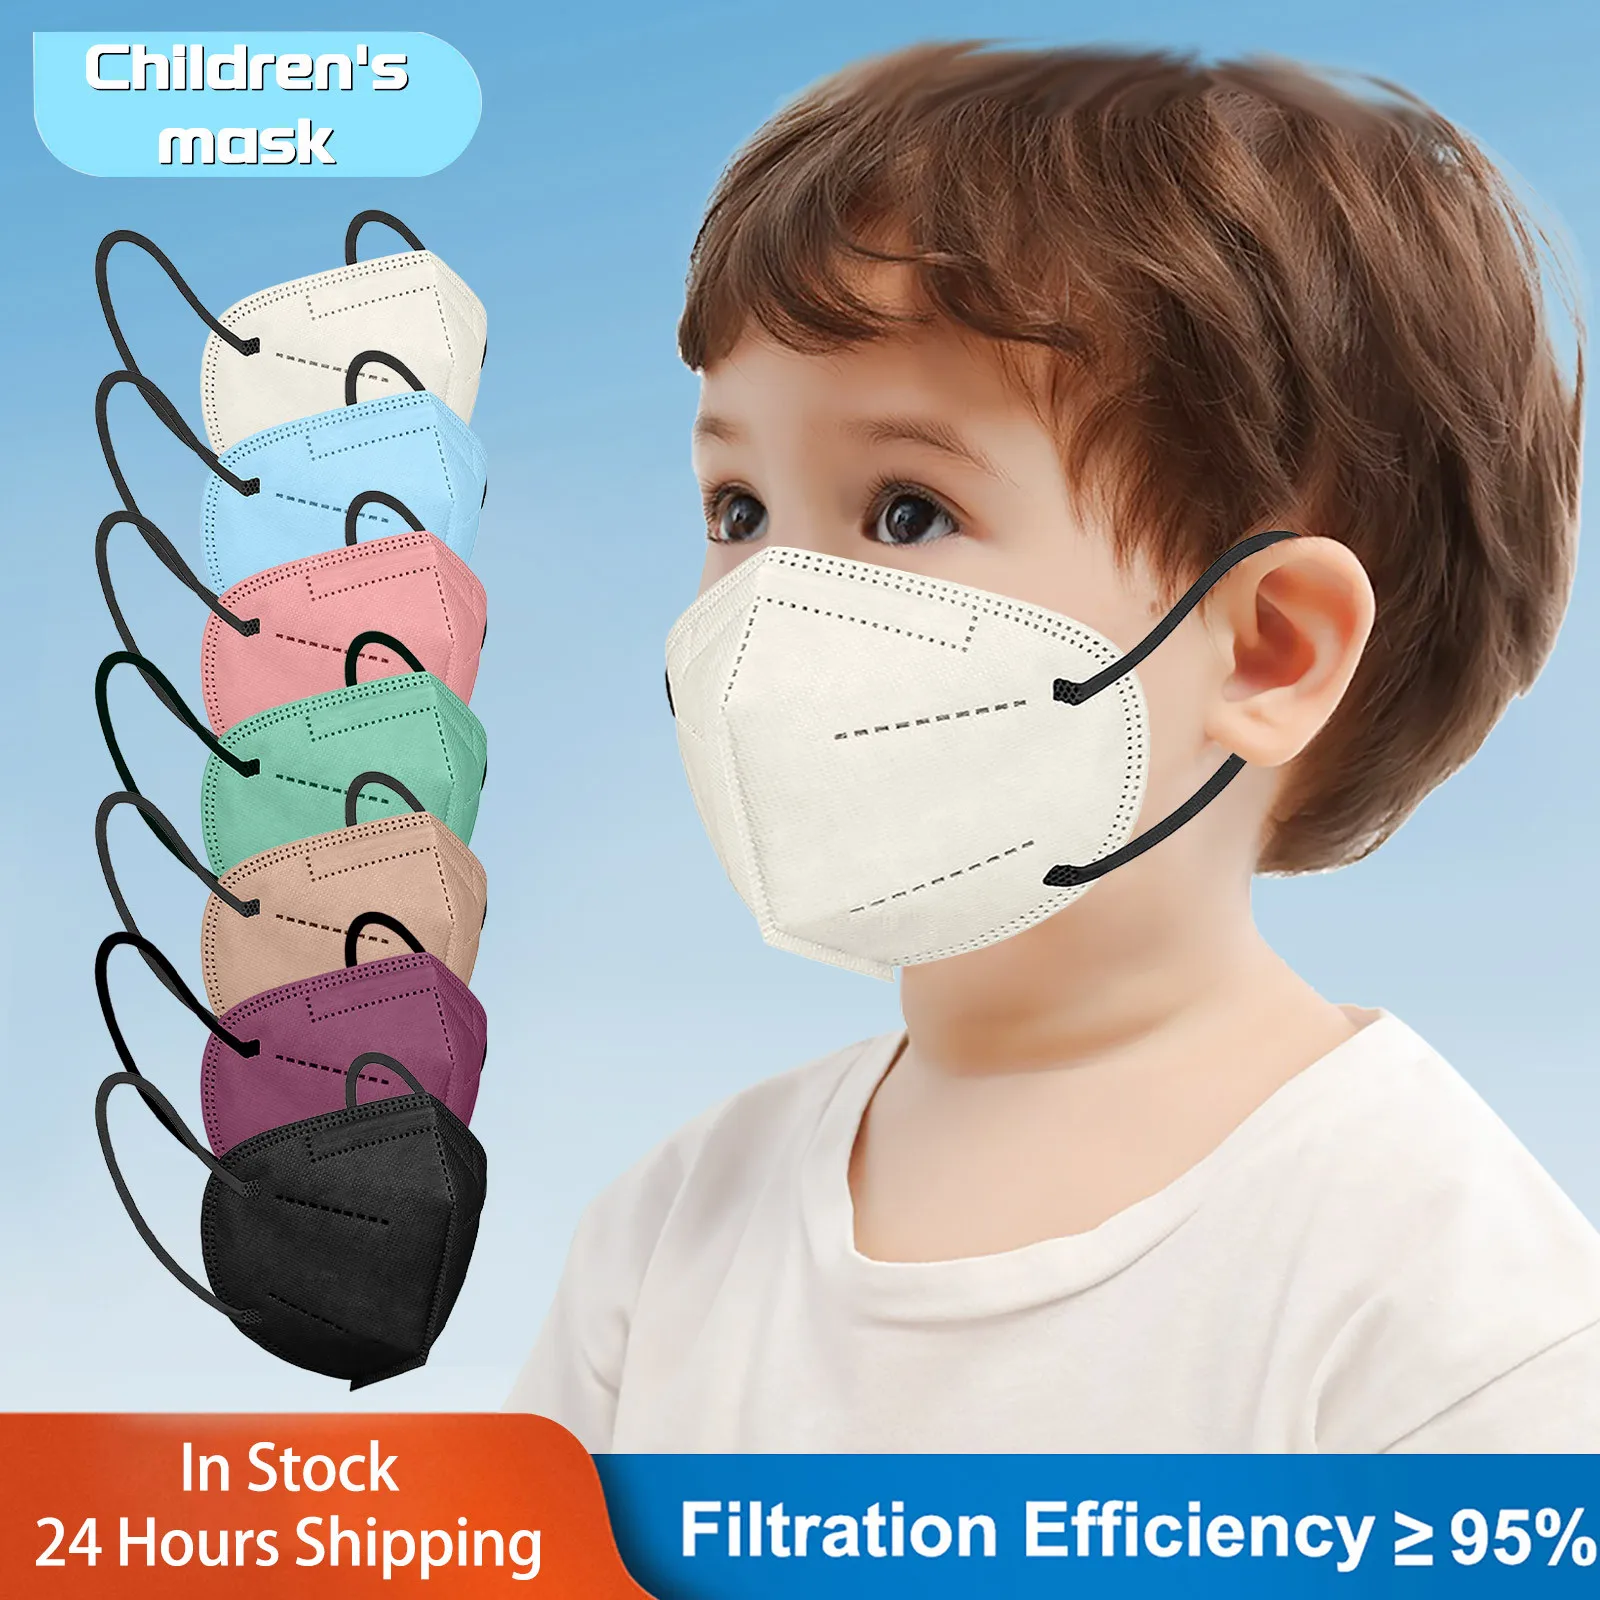 

50 шт. маски, эффективная фильтрация, 95% защита безопасности, одобренная KN95 маска, Детская одноразовая маска для лица от лица